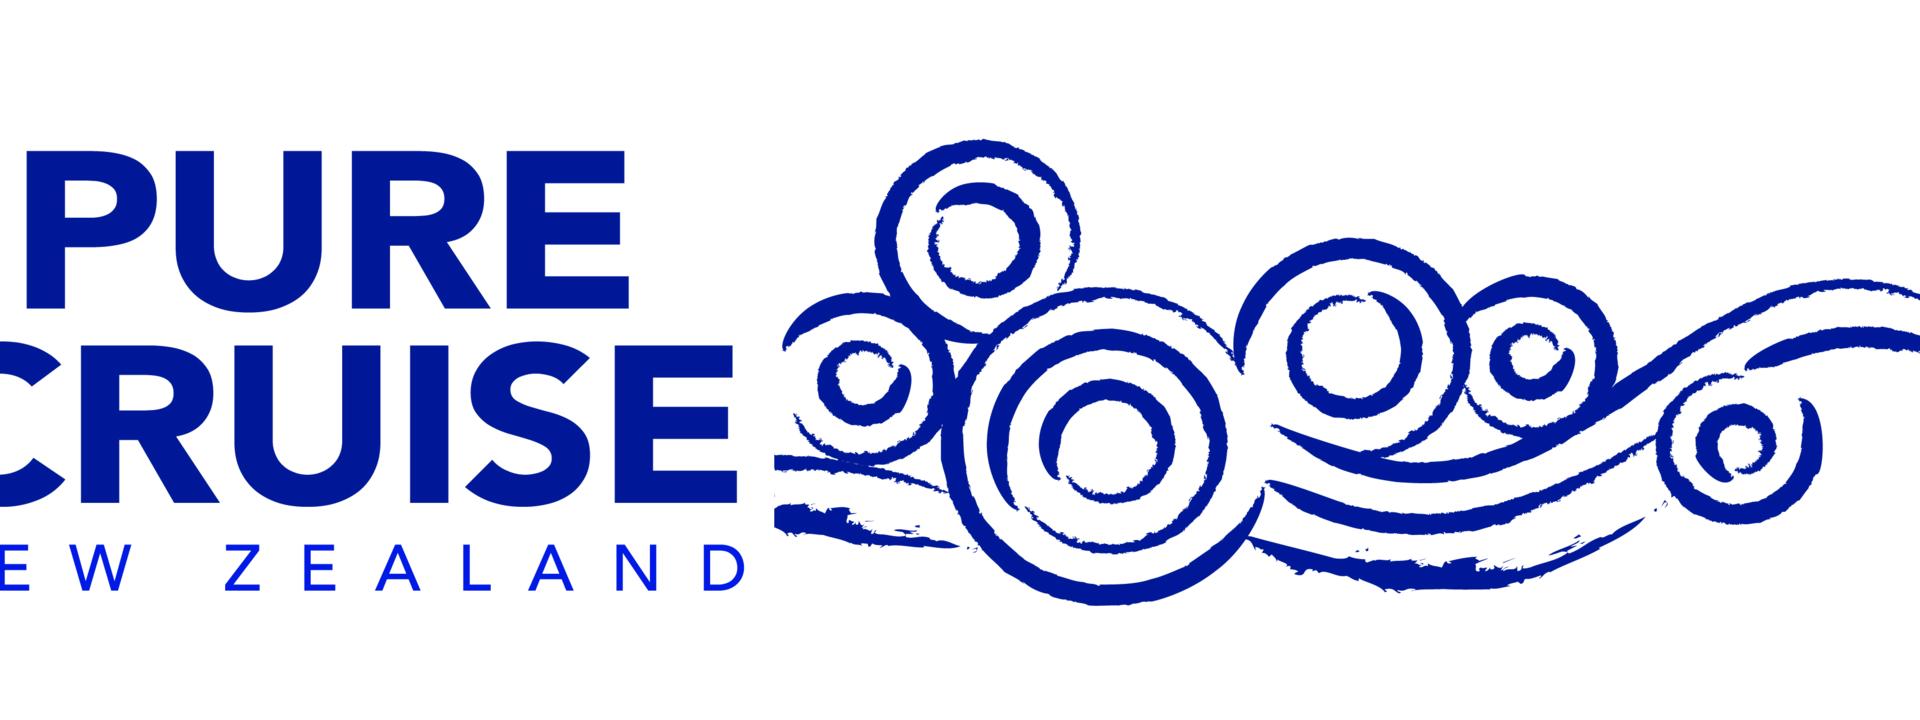 pure-cruise-high-res-logo-2019.jpg